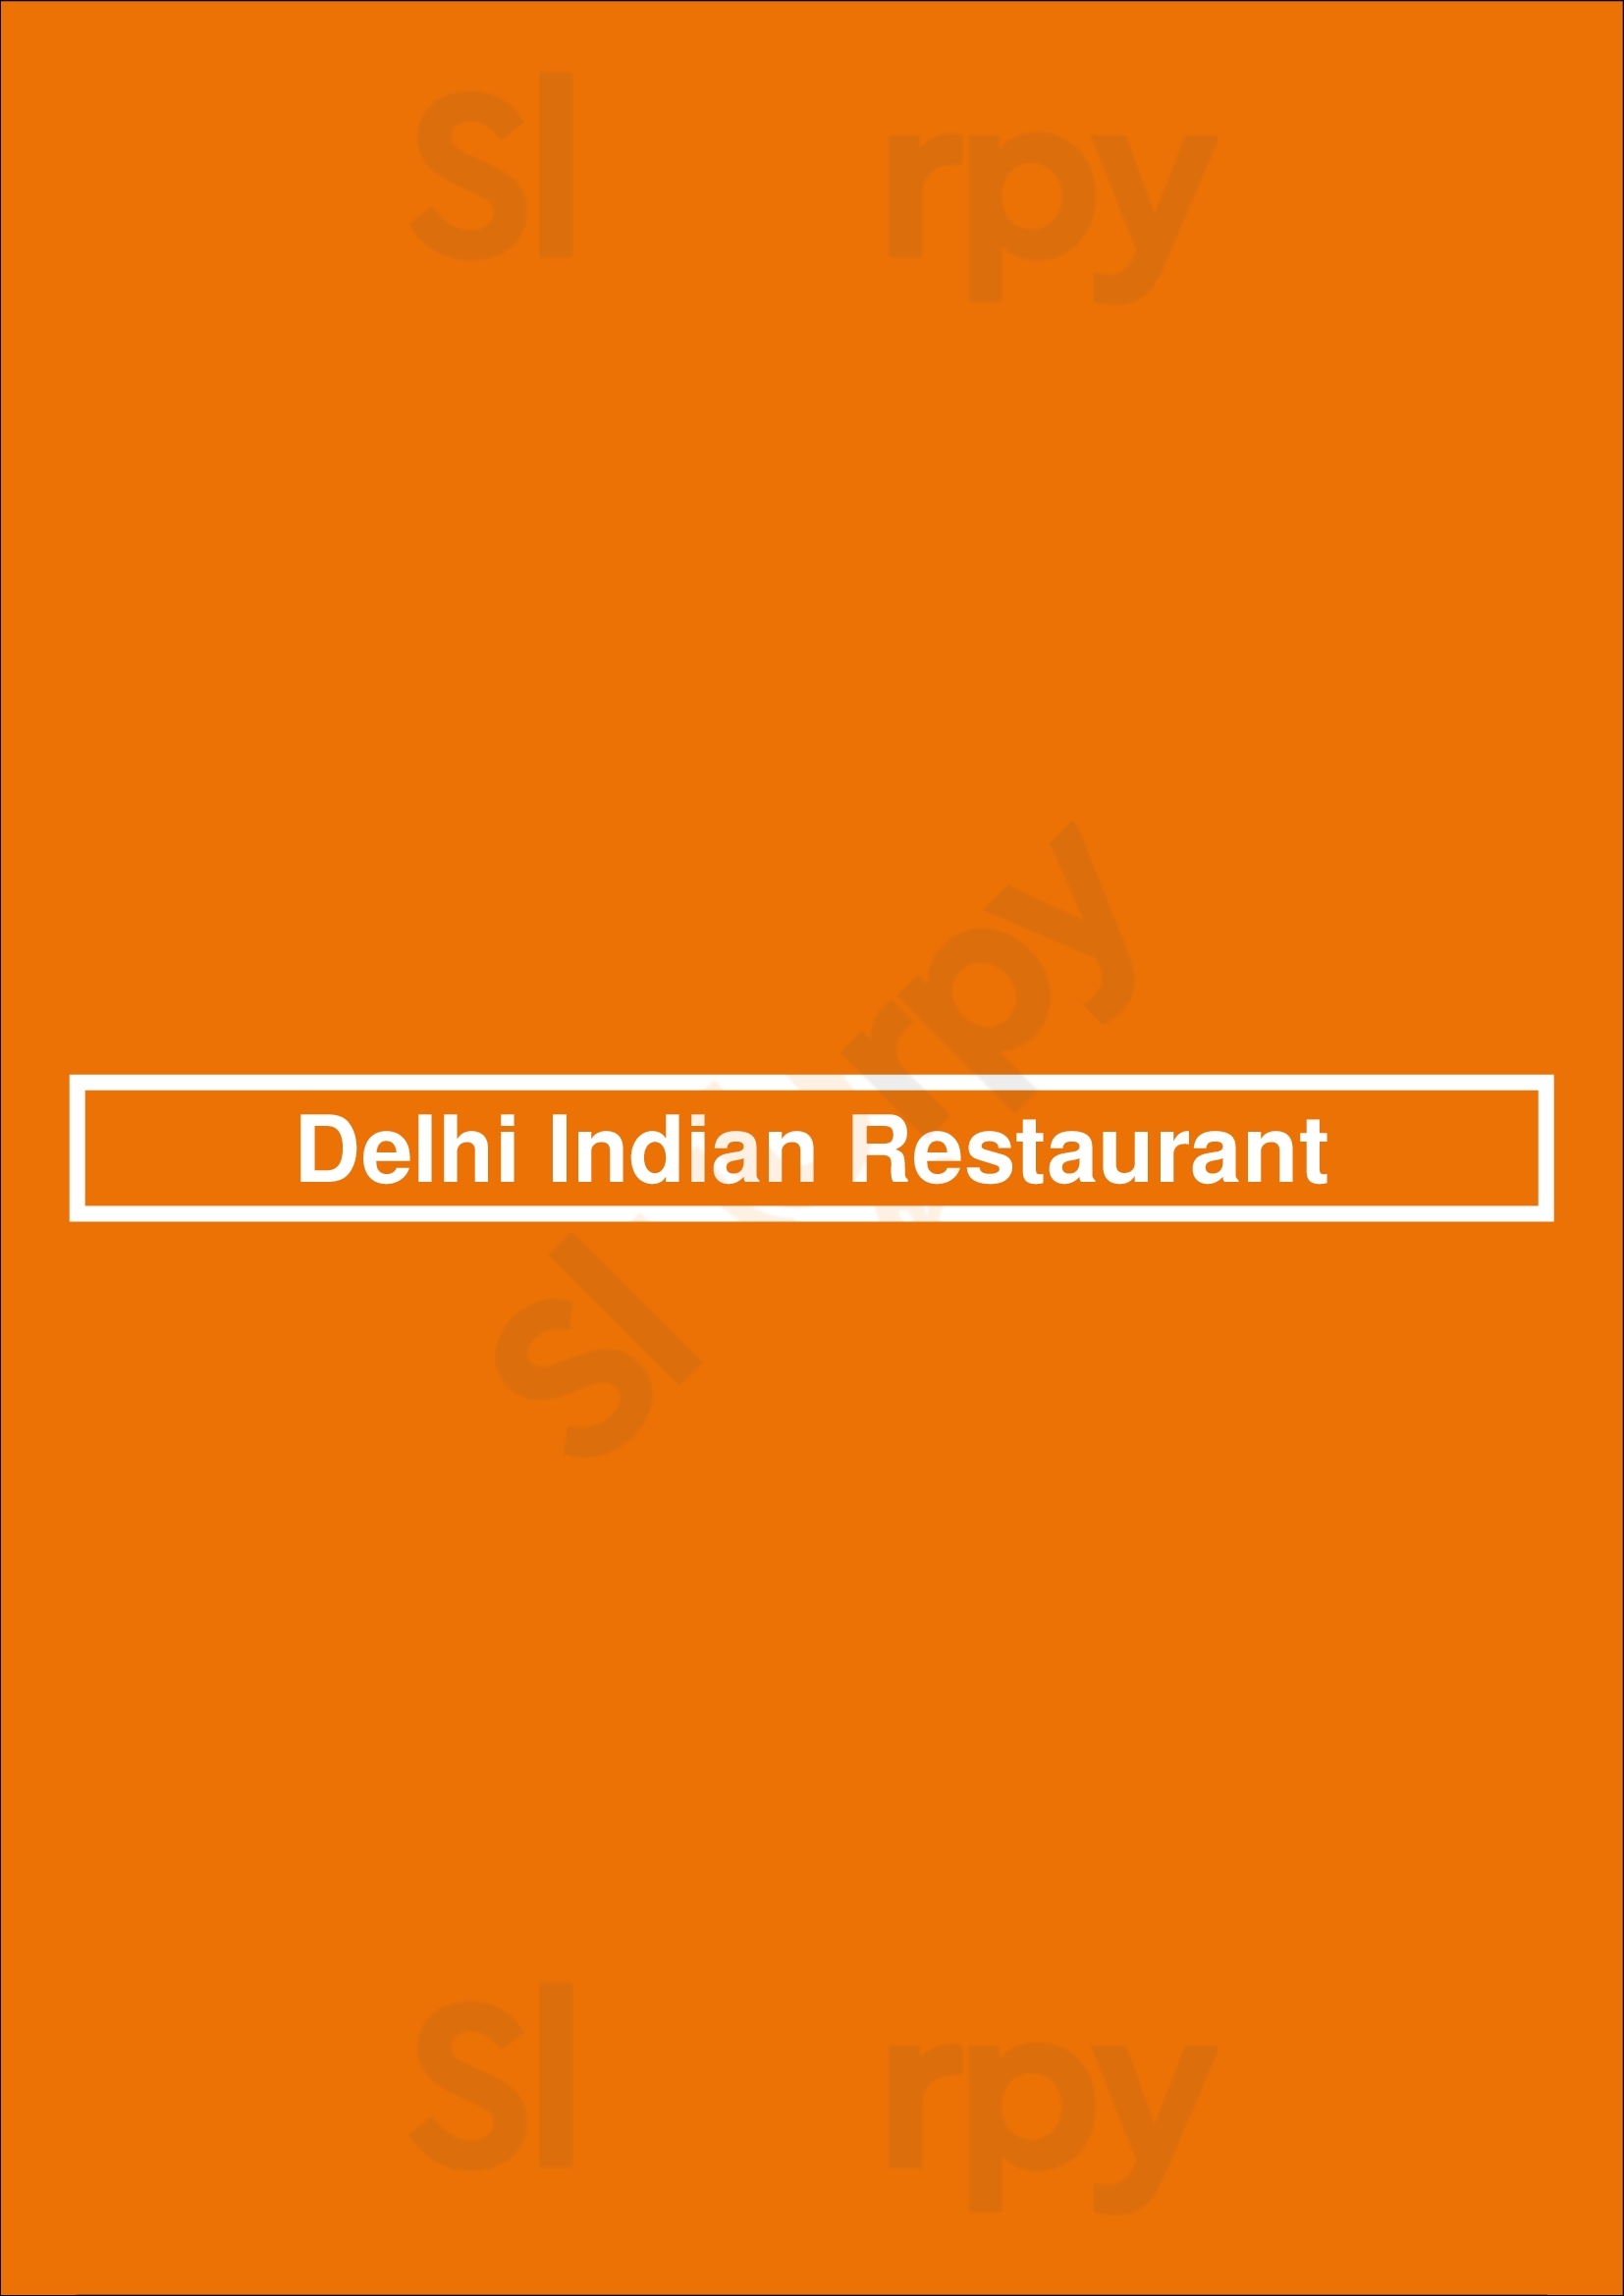 Delhi Indian Restaurant Funchal Menu - 1